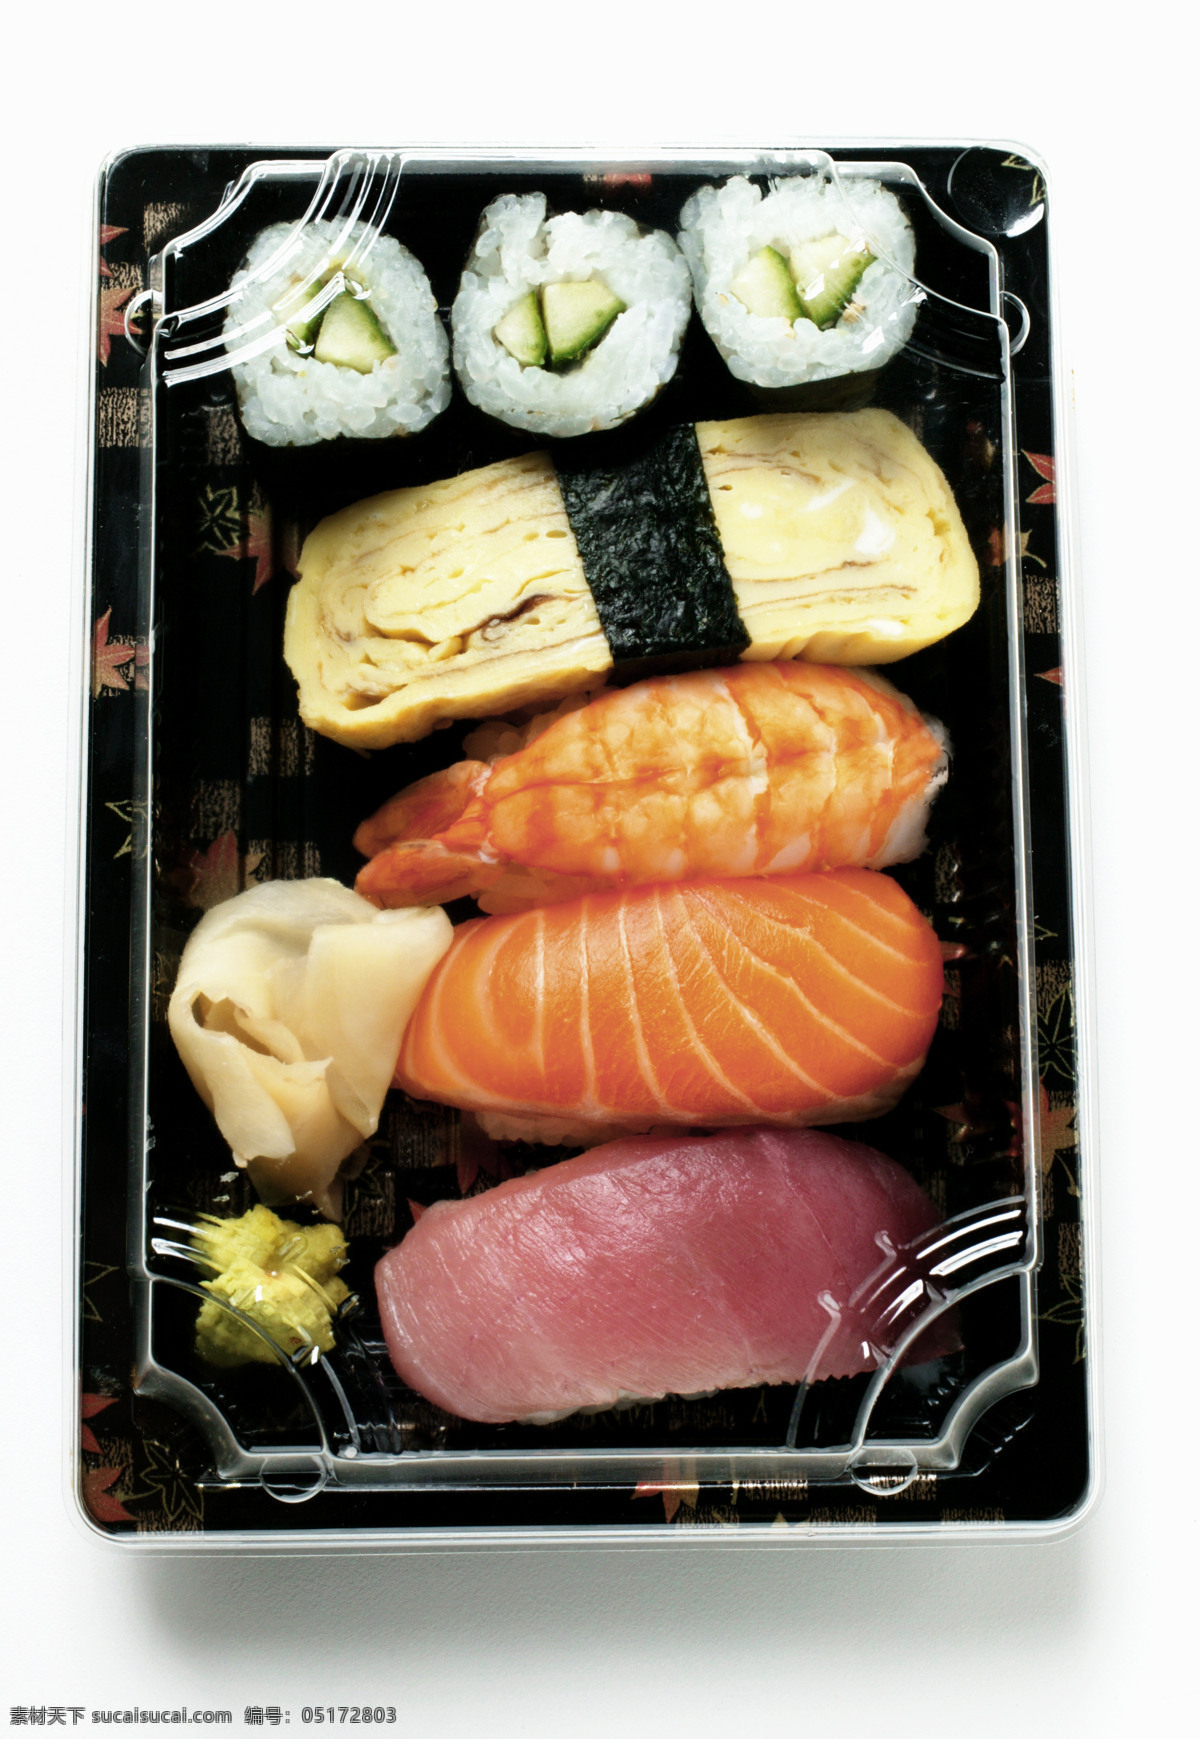 寿司 61 寿司图片 美食 美味 日本美食 外国美食 餐饮美食